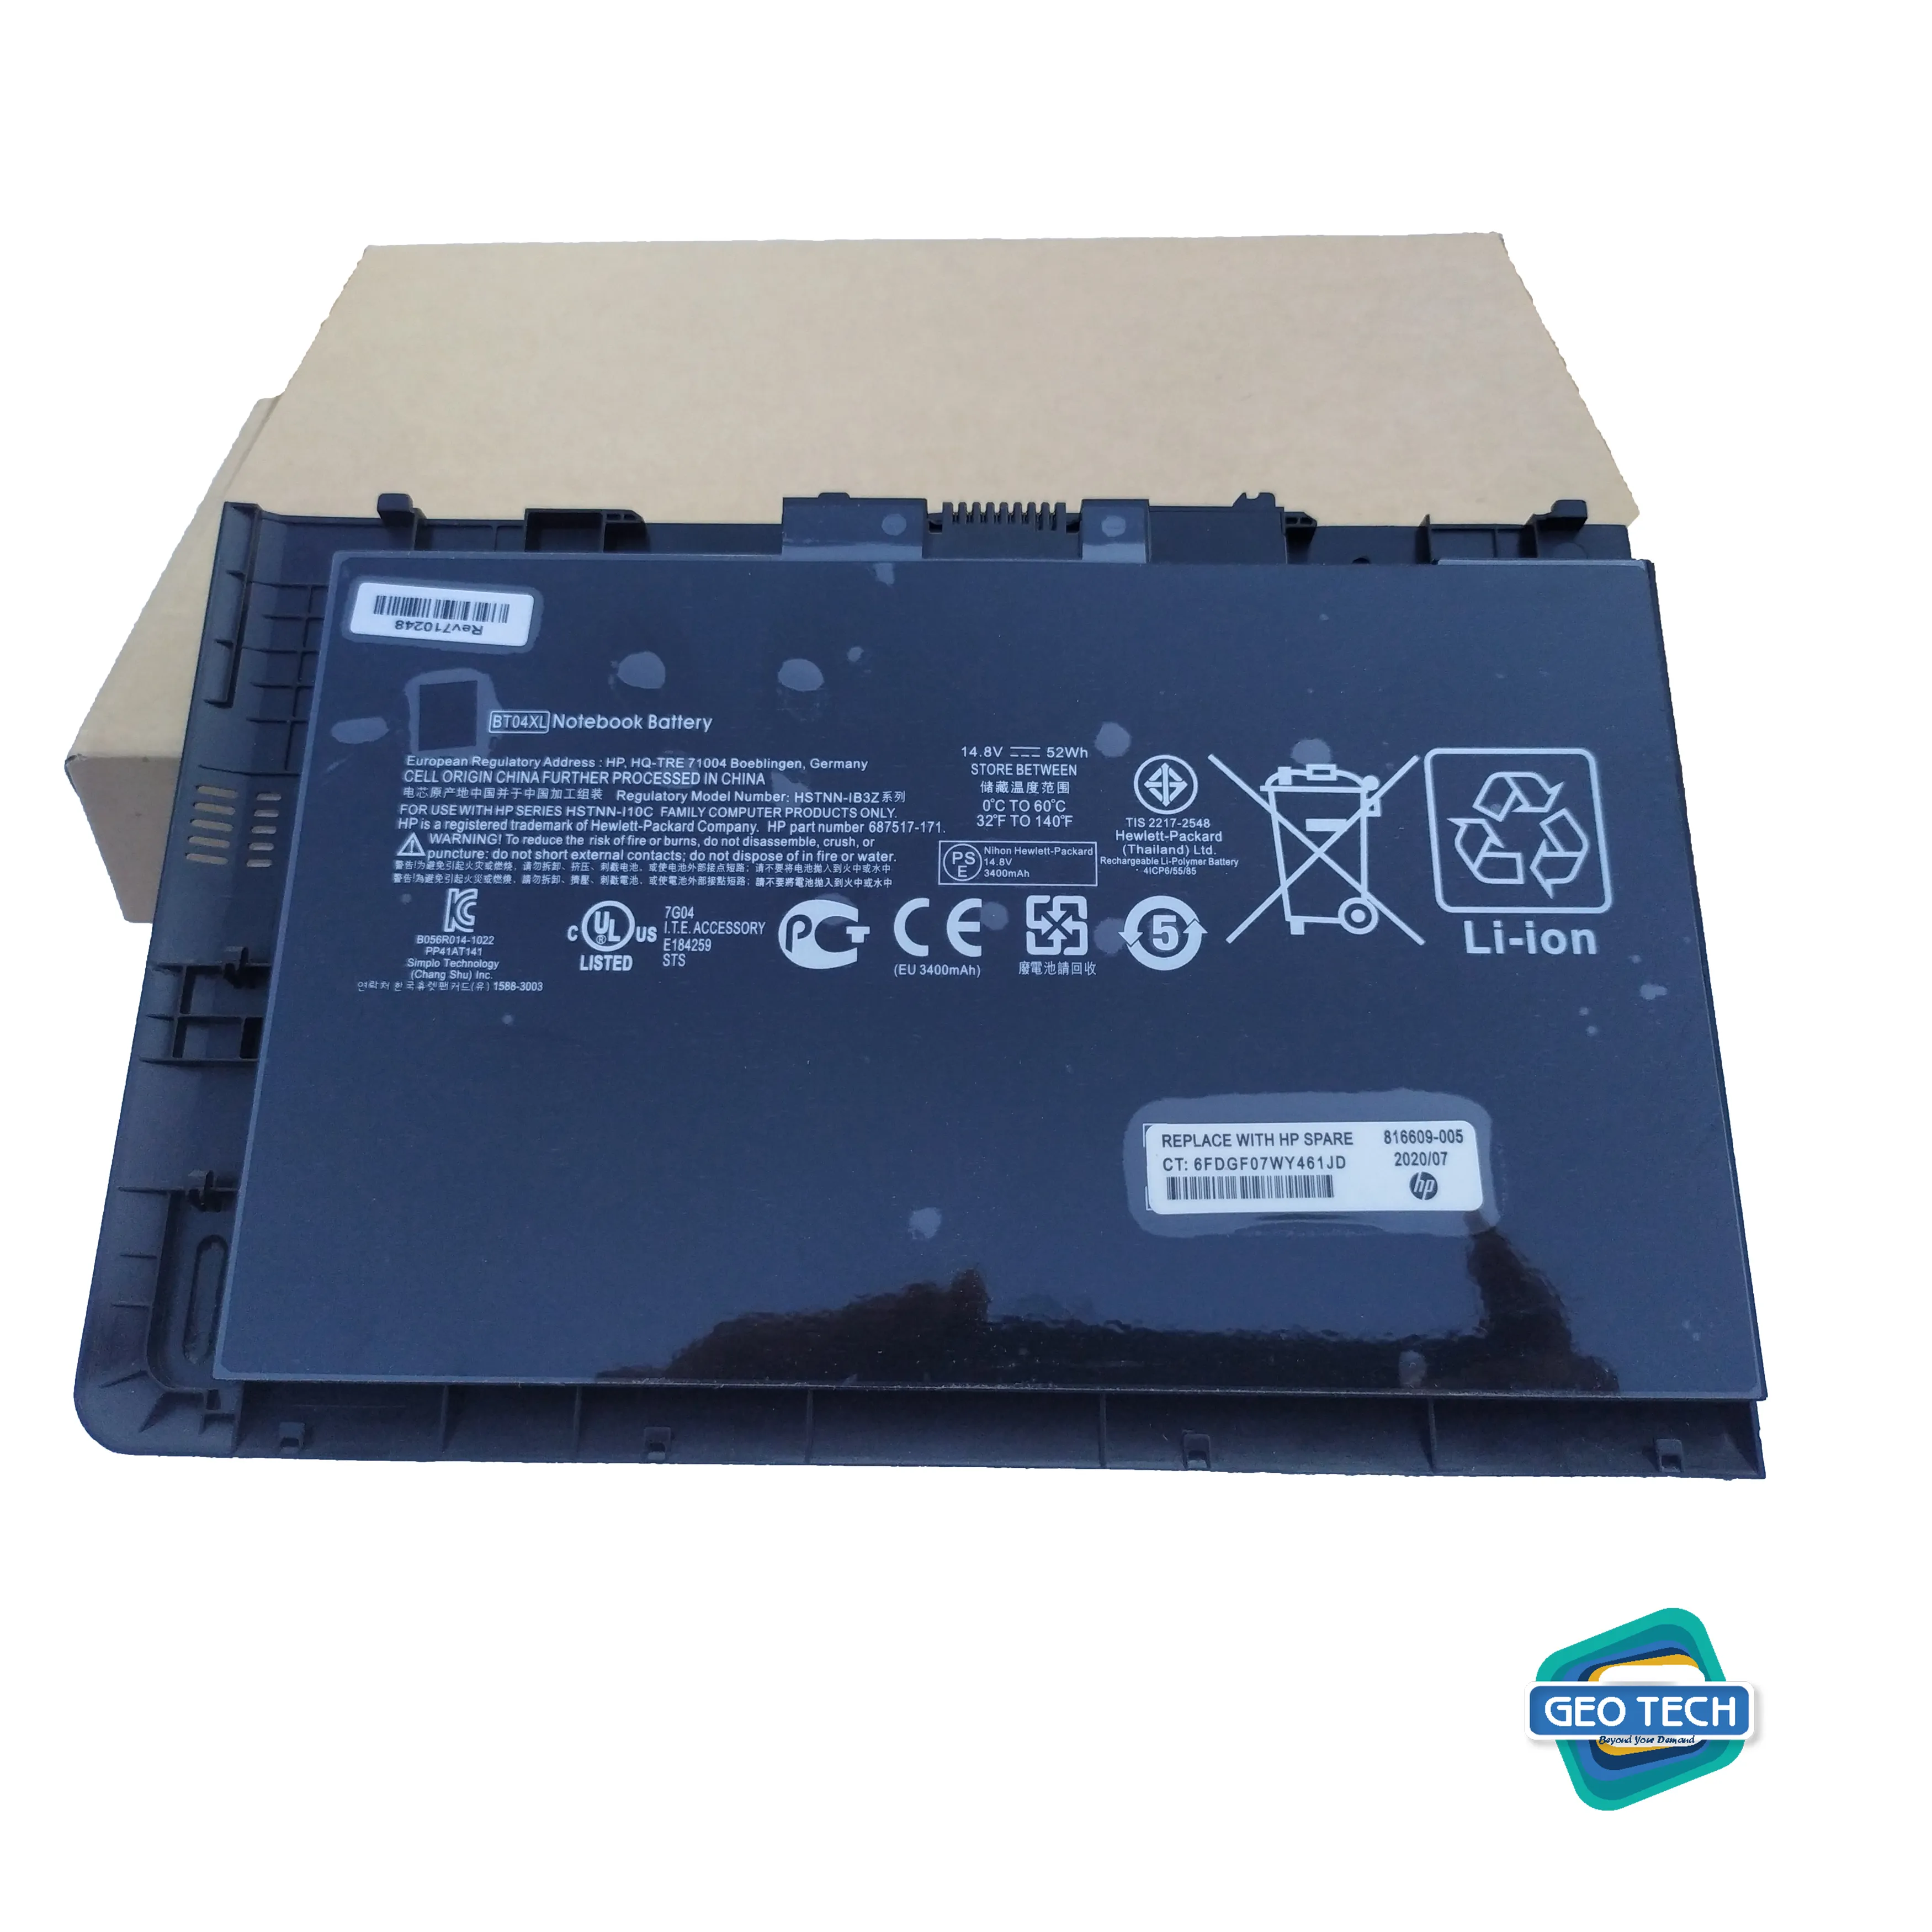 9470m BT04 BT04XL Notebook Battery for HP EliteBook Folio 9470 9470M 9480 9480M Series Ultrabook Laptop fits BA06 BA06XL Battery Spare 687945-001 696621-001 H4Q47AA H4Q48AA